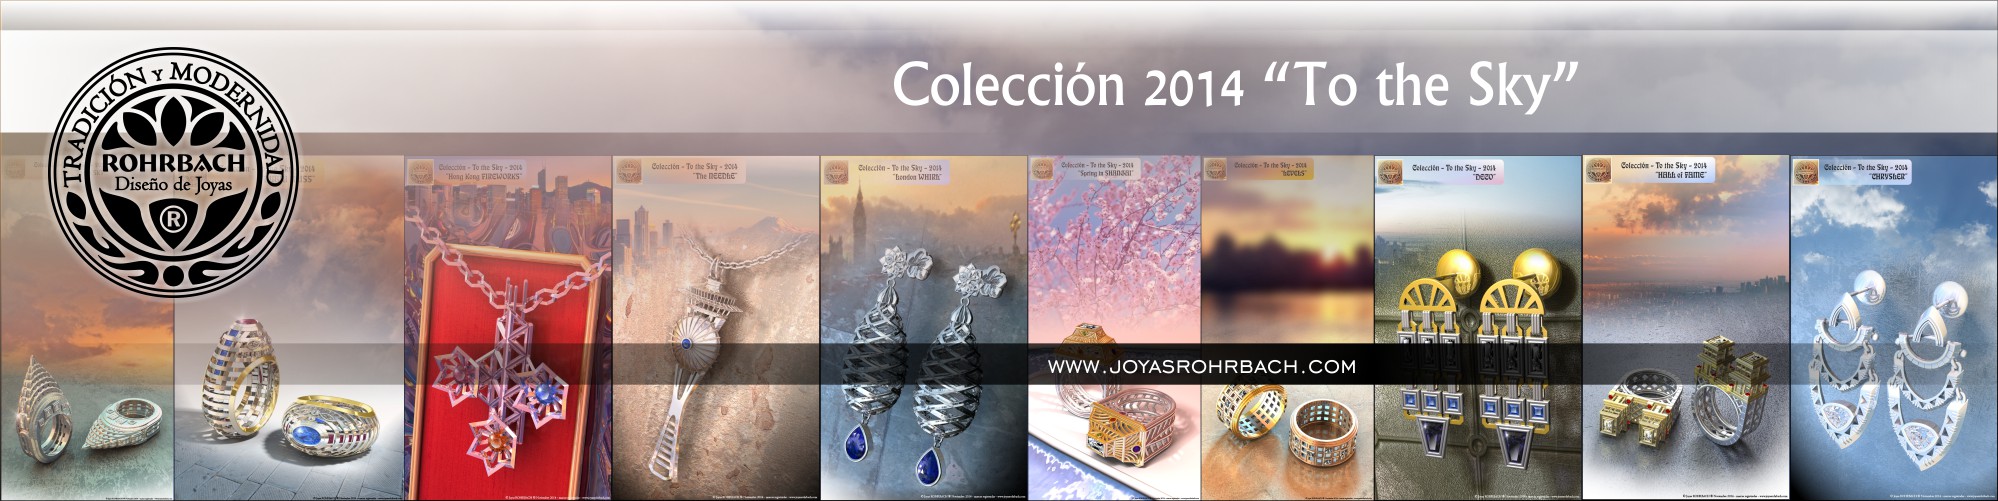 Colección To the Sky 2014 ROHRBACH ® Maestro joyero diseñador de joyas